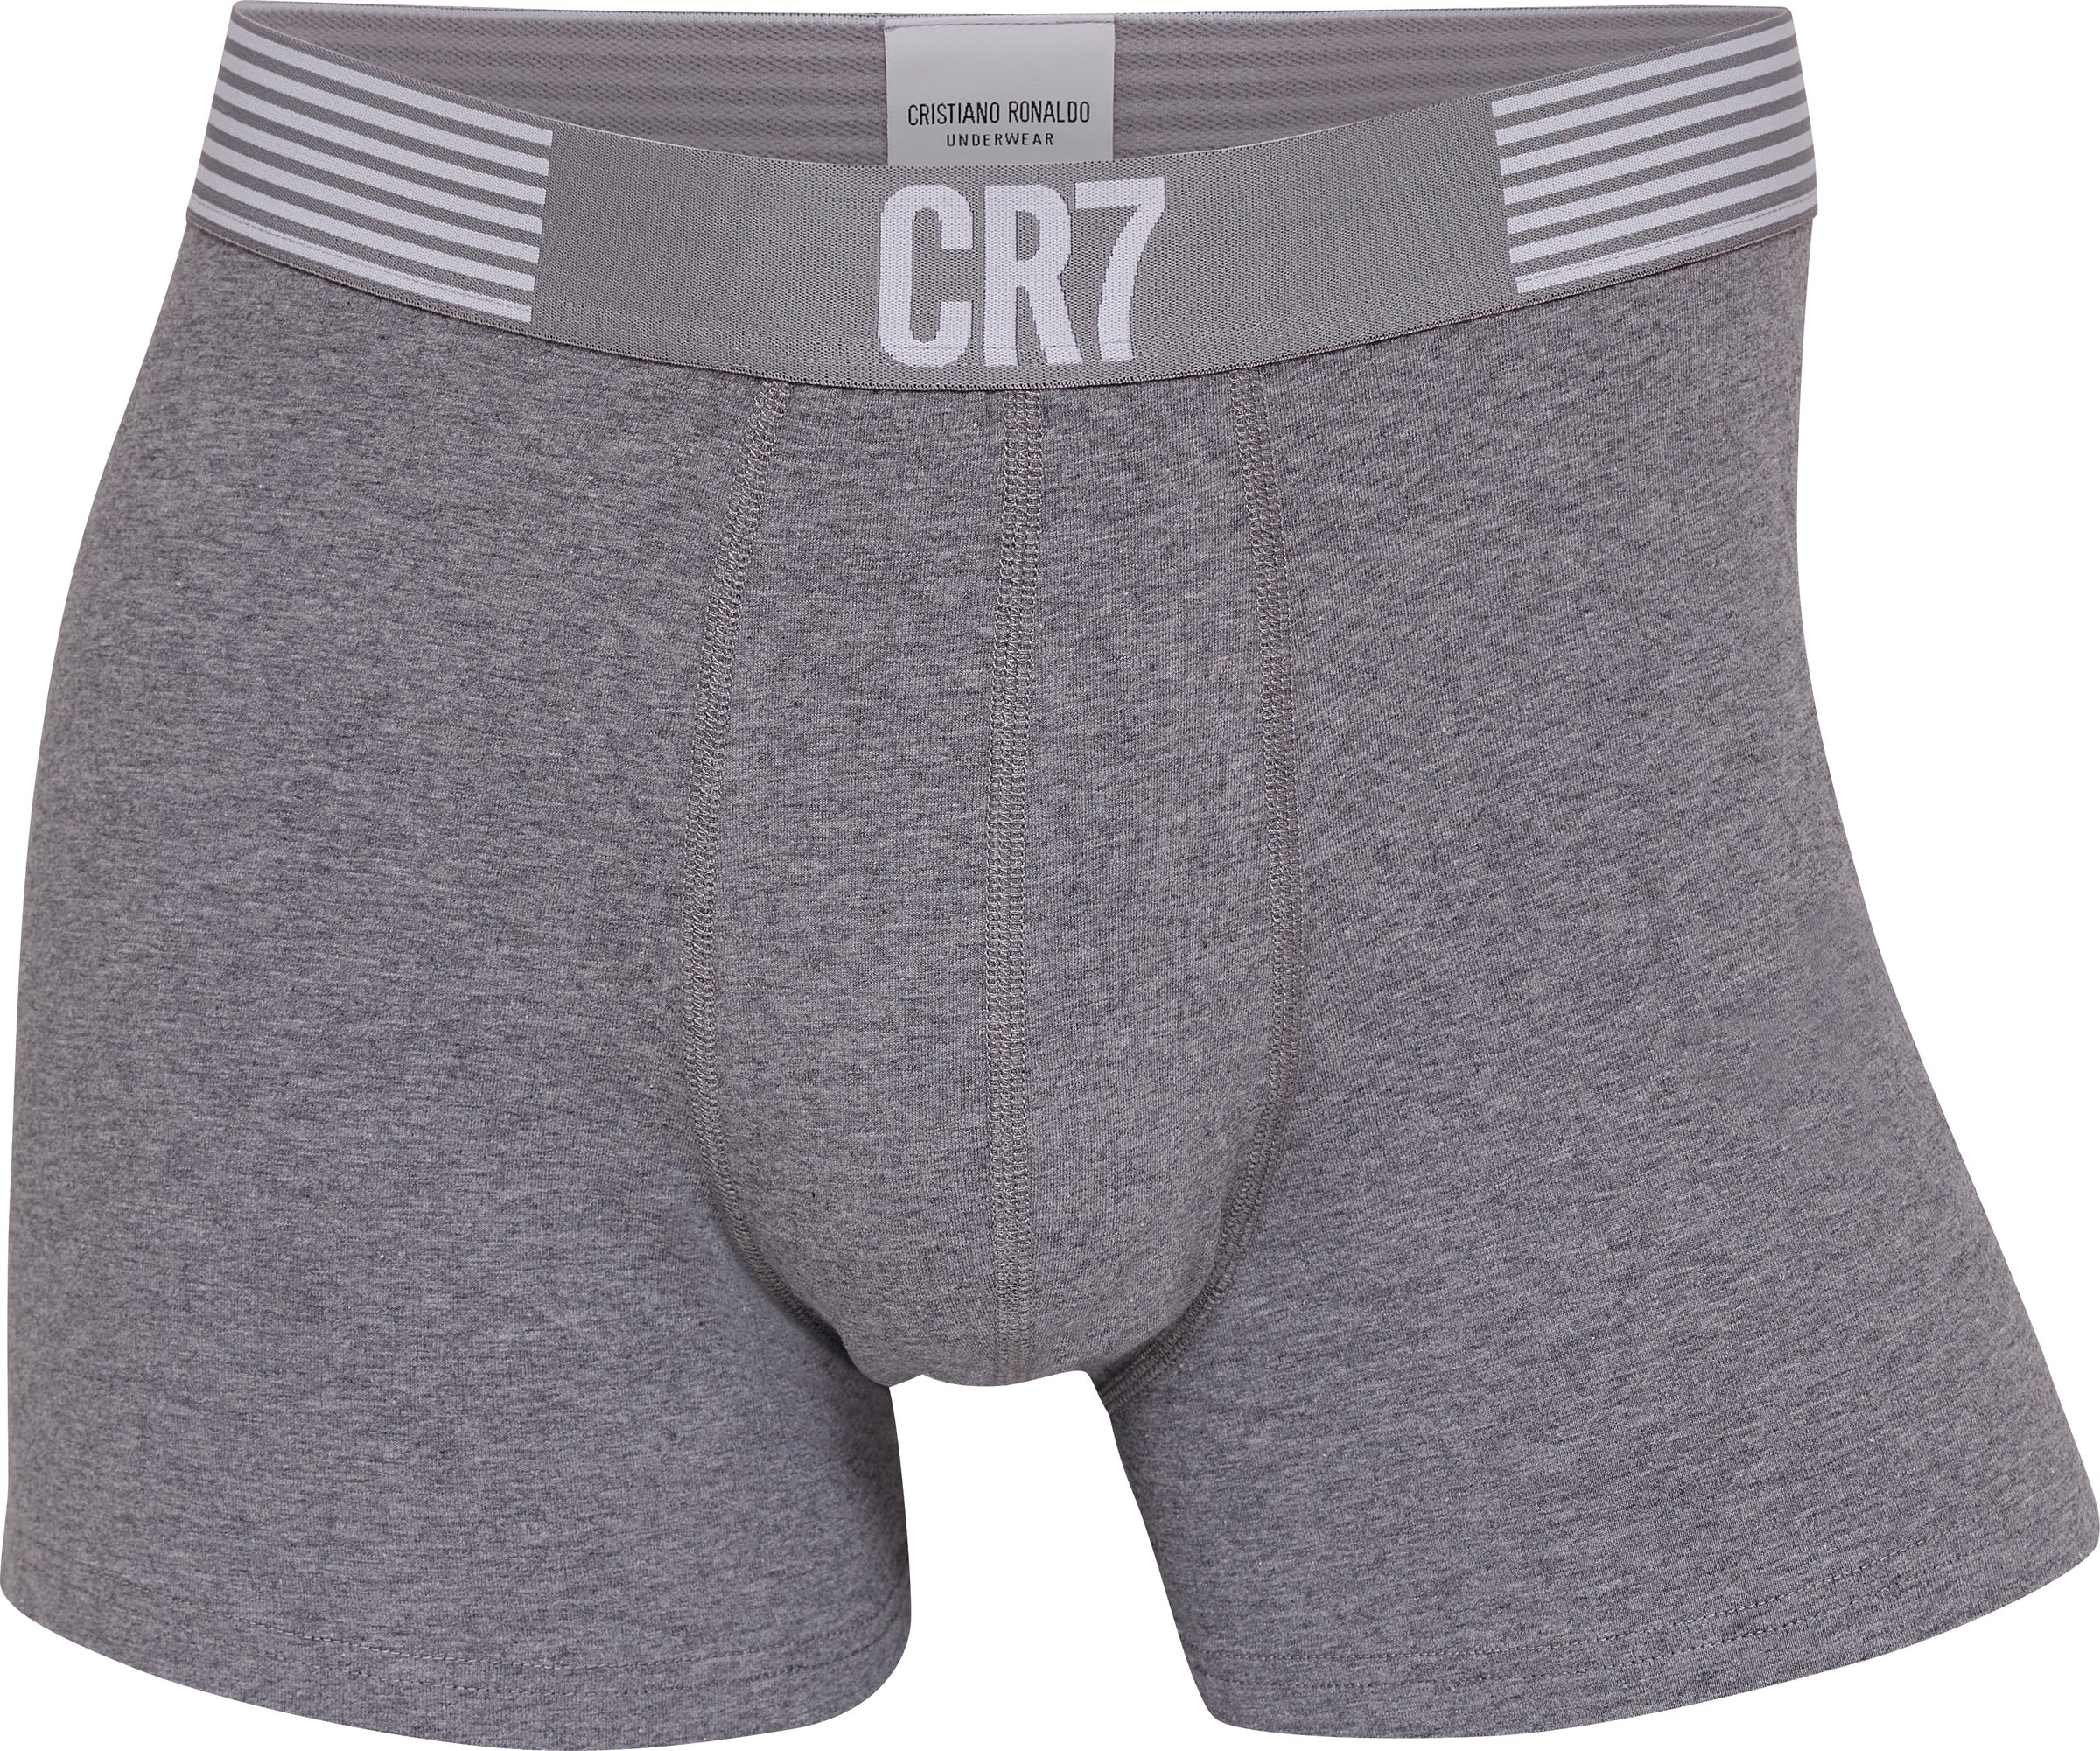 CR7 Cristiano Ronaldo Men's Trunks, Grey/Black Print/Blue, S price